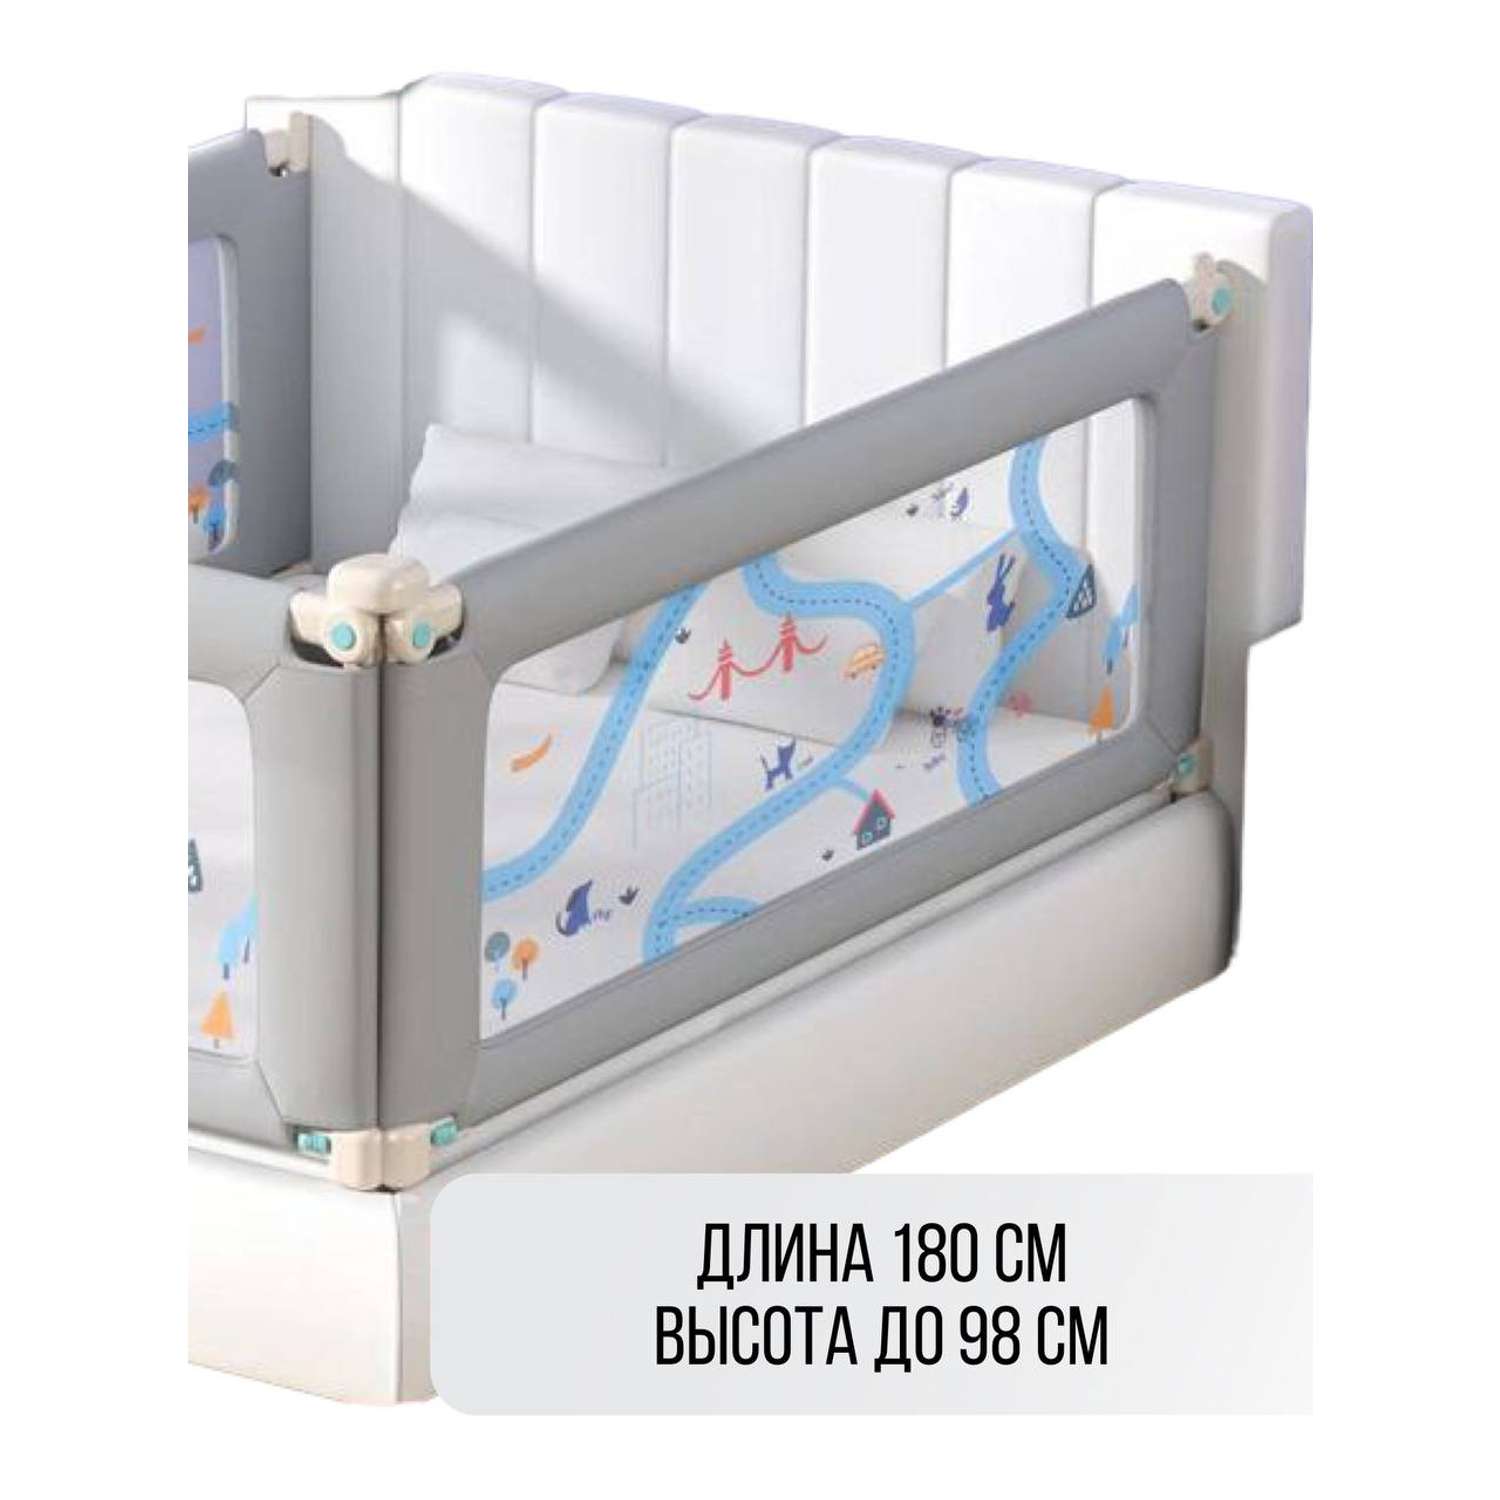 Барьер для кровати Safely and Soft Premium длиной 180см серый на одну сторону кровати - фото 1